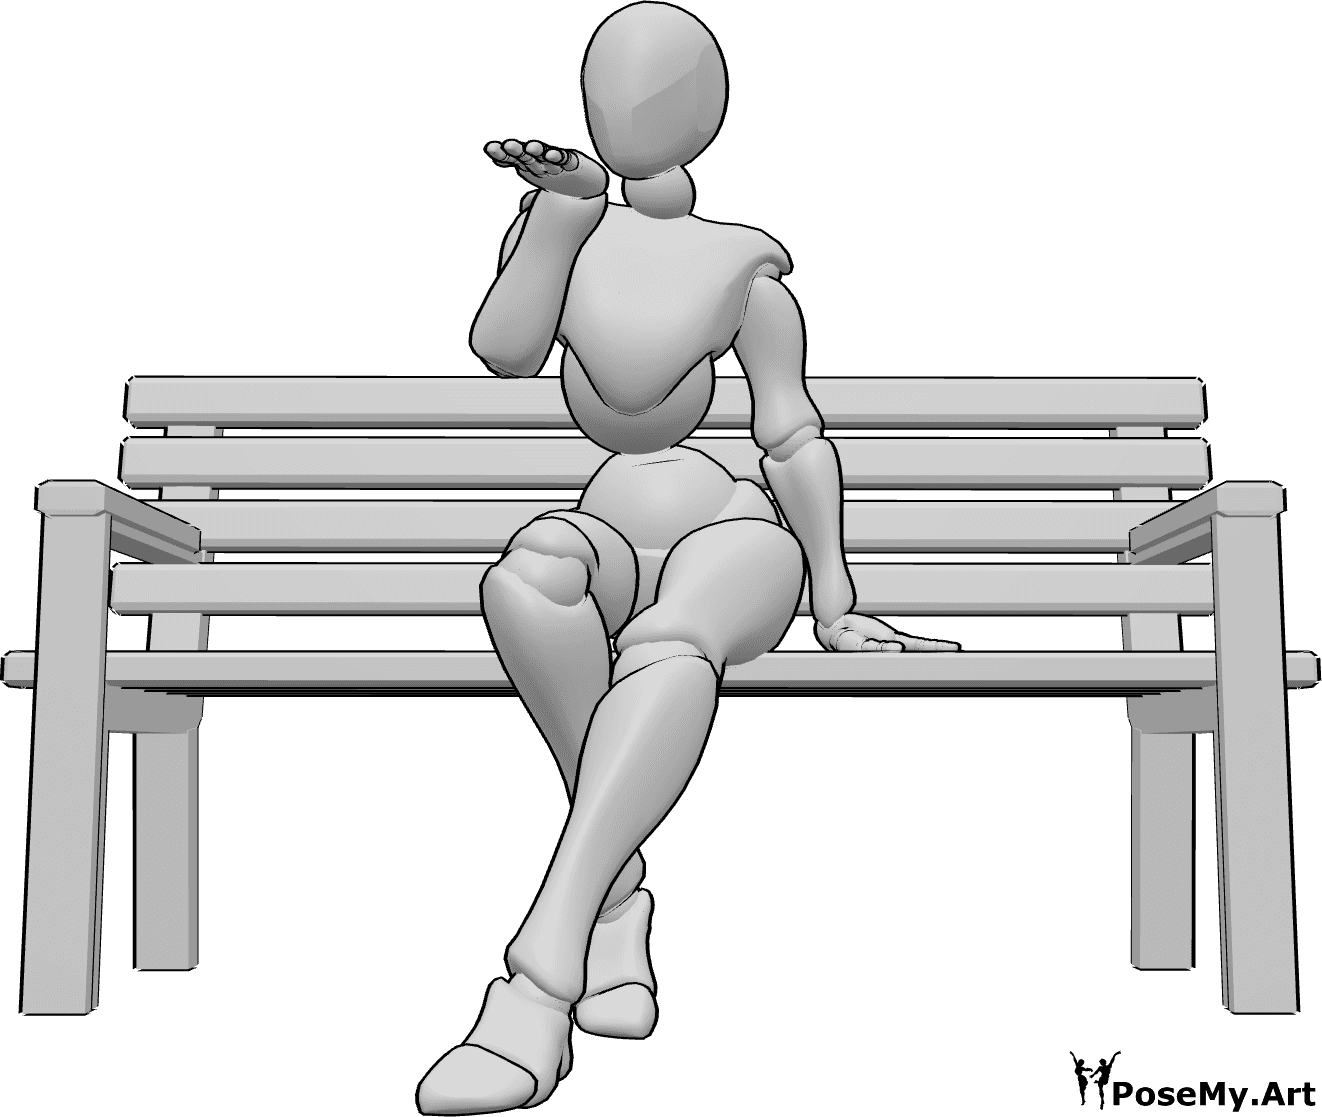 Referencia de poses- Soplando beso linda pose - Mujer sentada en el banco y soplando un beso a alguien